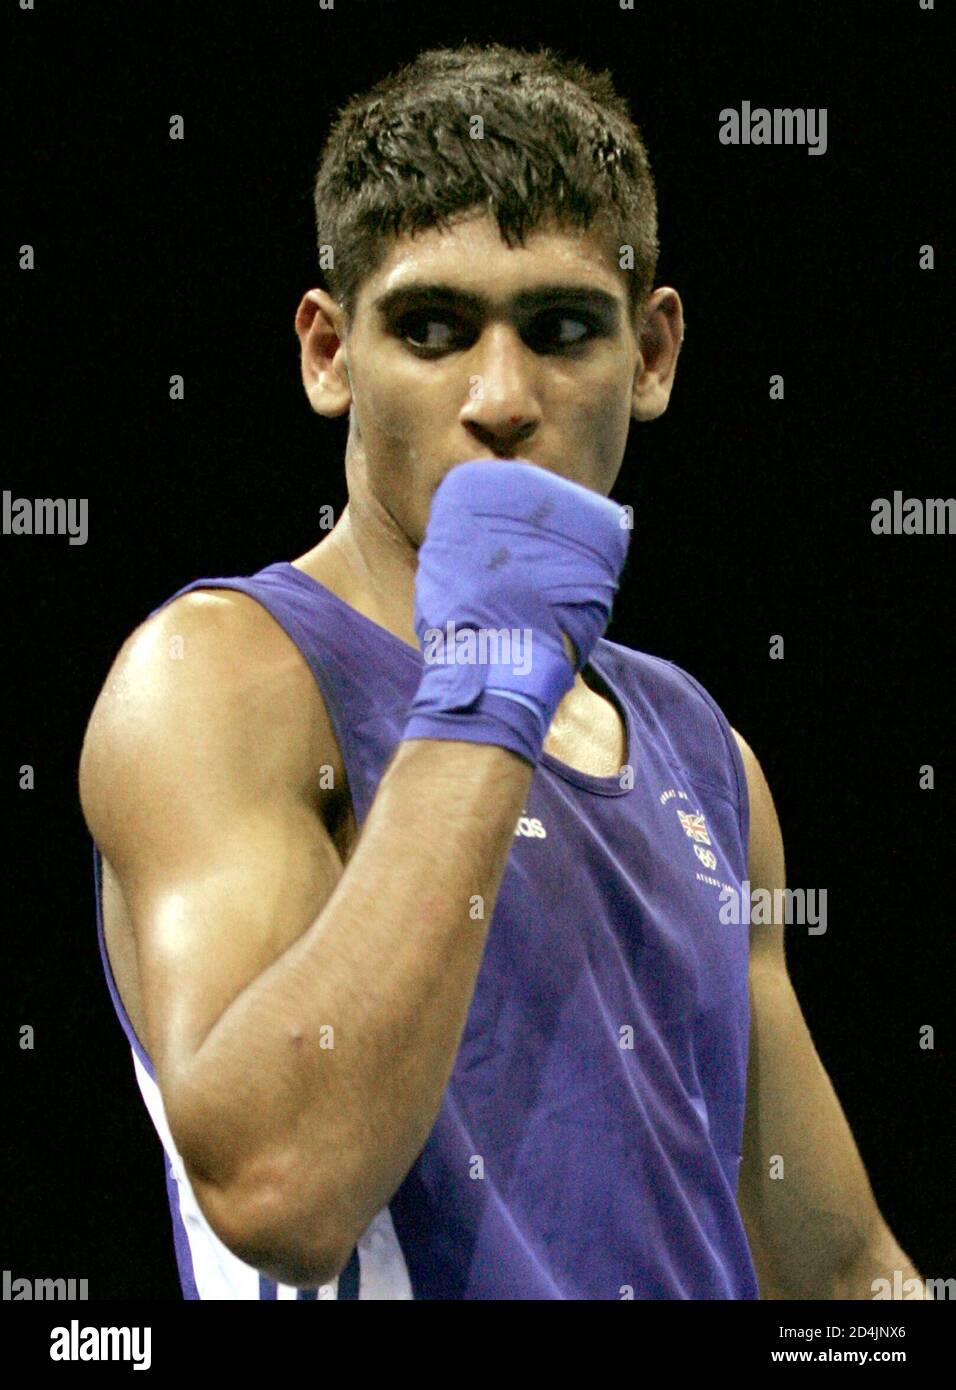 El británico Amir Khan celebra la victoria [sobre el Serik Yeleuov de Kazajstán] durante el ligero partido de boxeo masculino (60 kg) en semifinal en los Juegos Olímpicos de Verano de Atenas 2004, 27 de agosto de 2004. Khan ganó el partido. Foto de stock